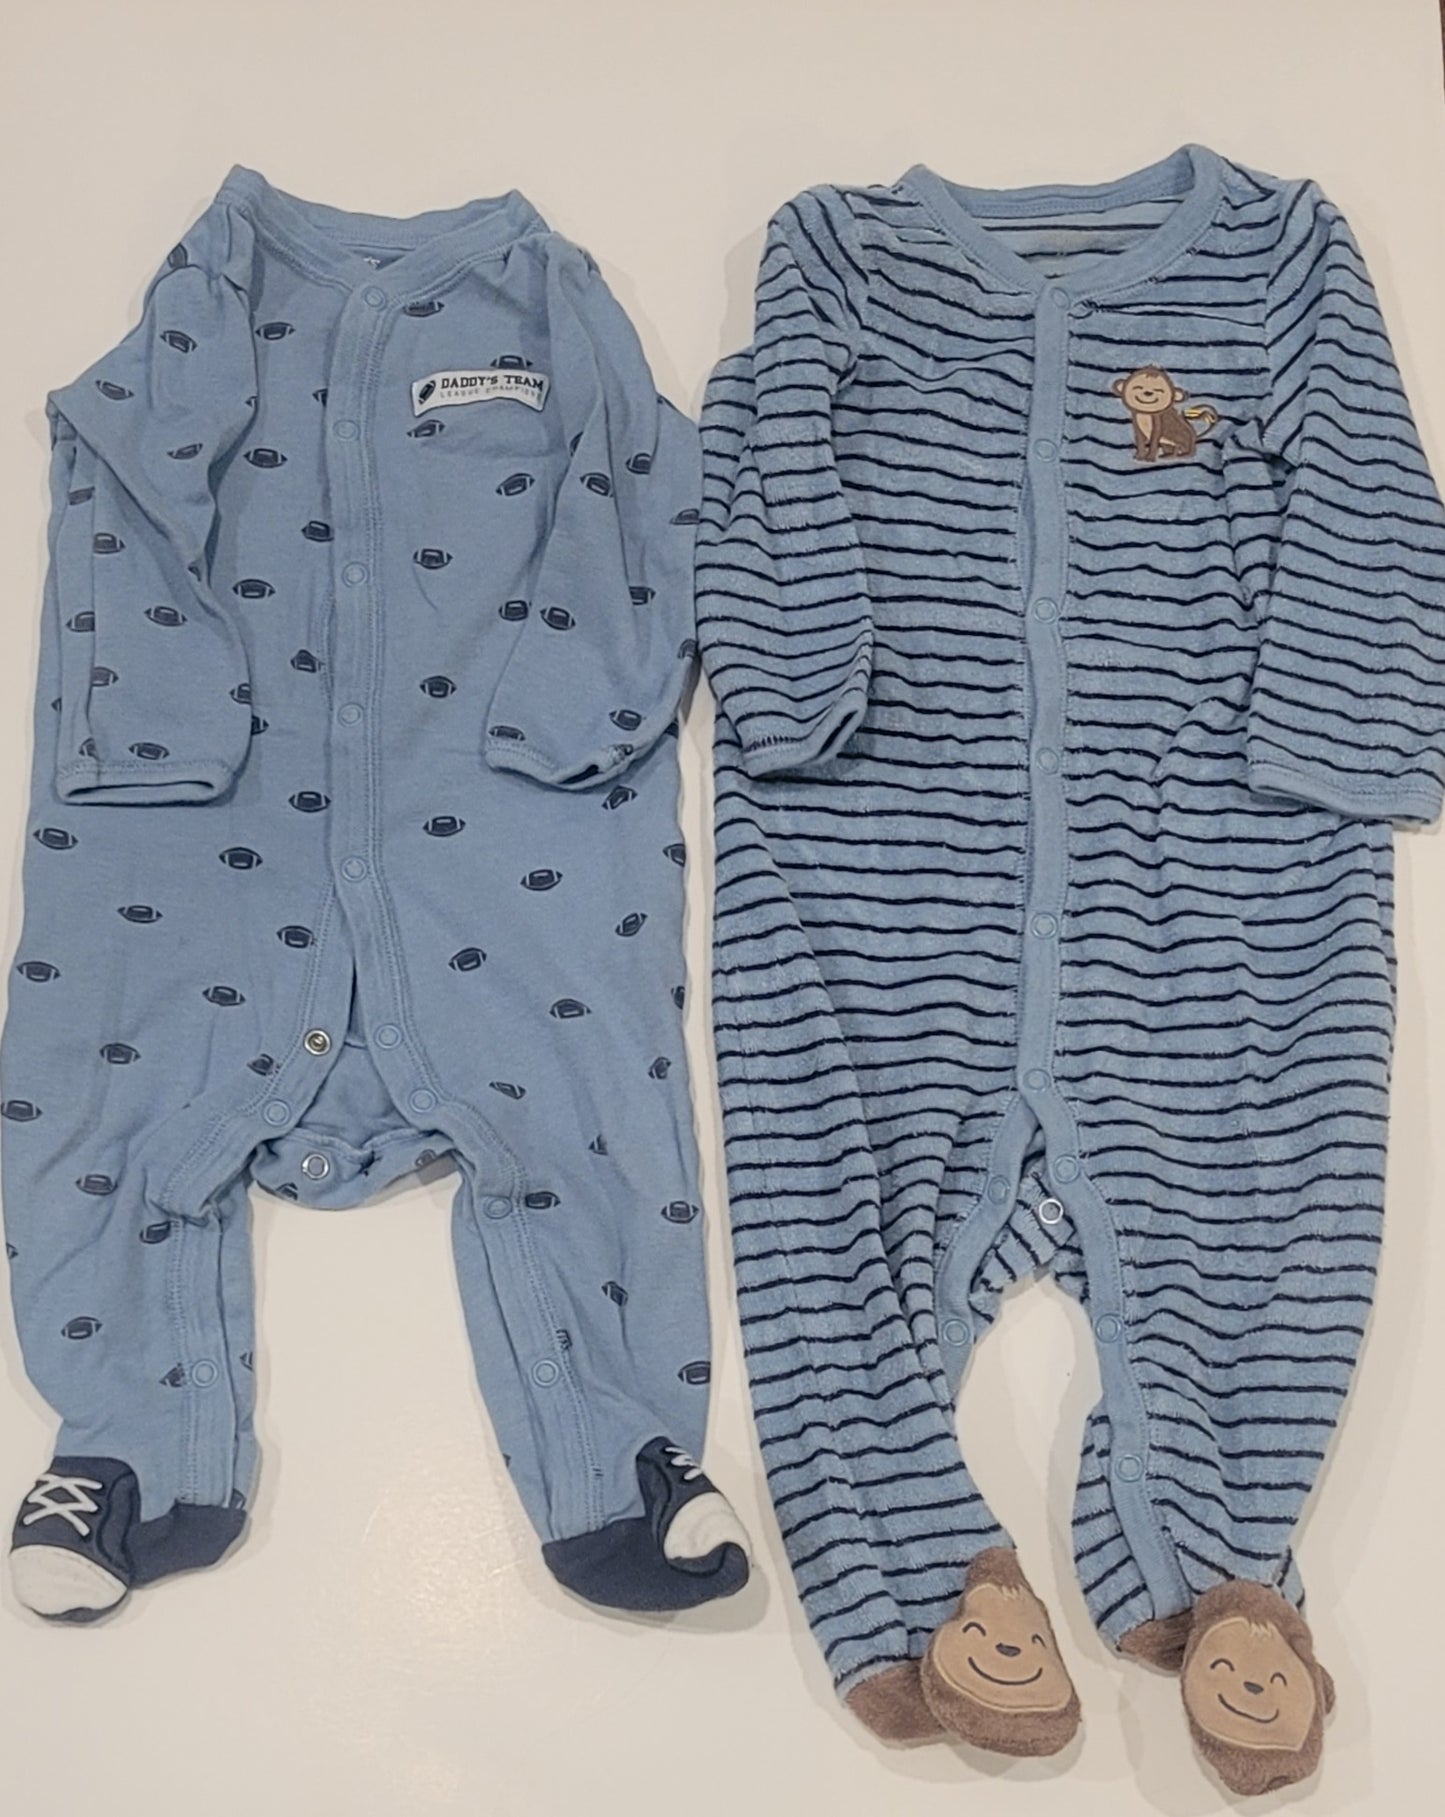 Carters Pajama Set - 9 months